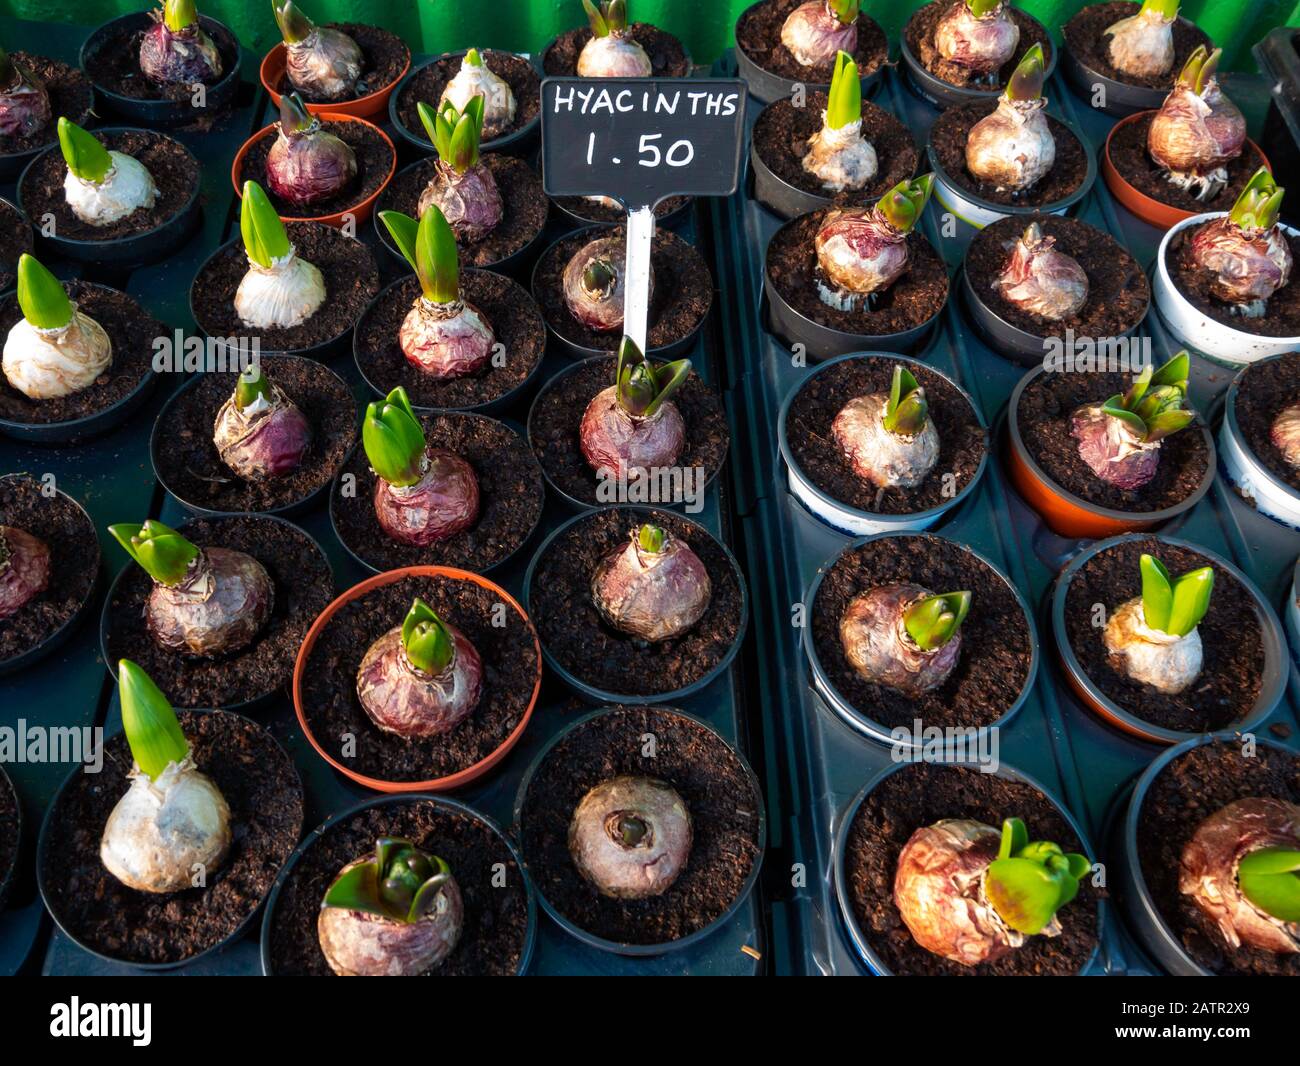 Garden Center mostra di piante Hyacinth vaso per la primavera prezzo a £1,50 ciascuno Foto Stock